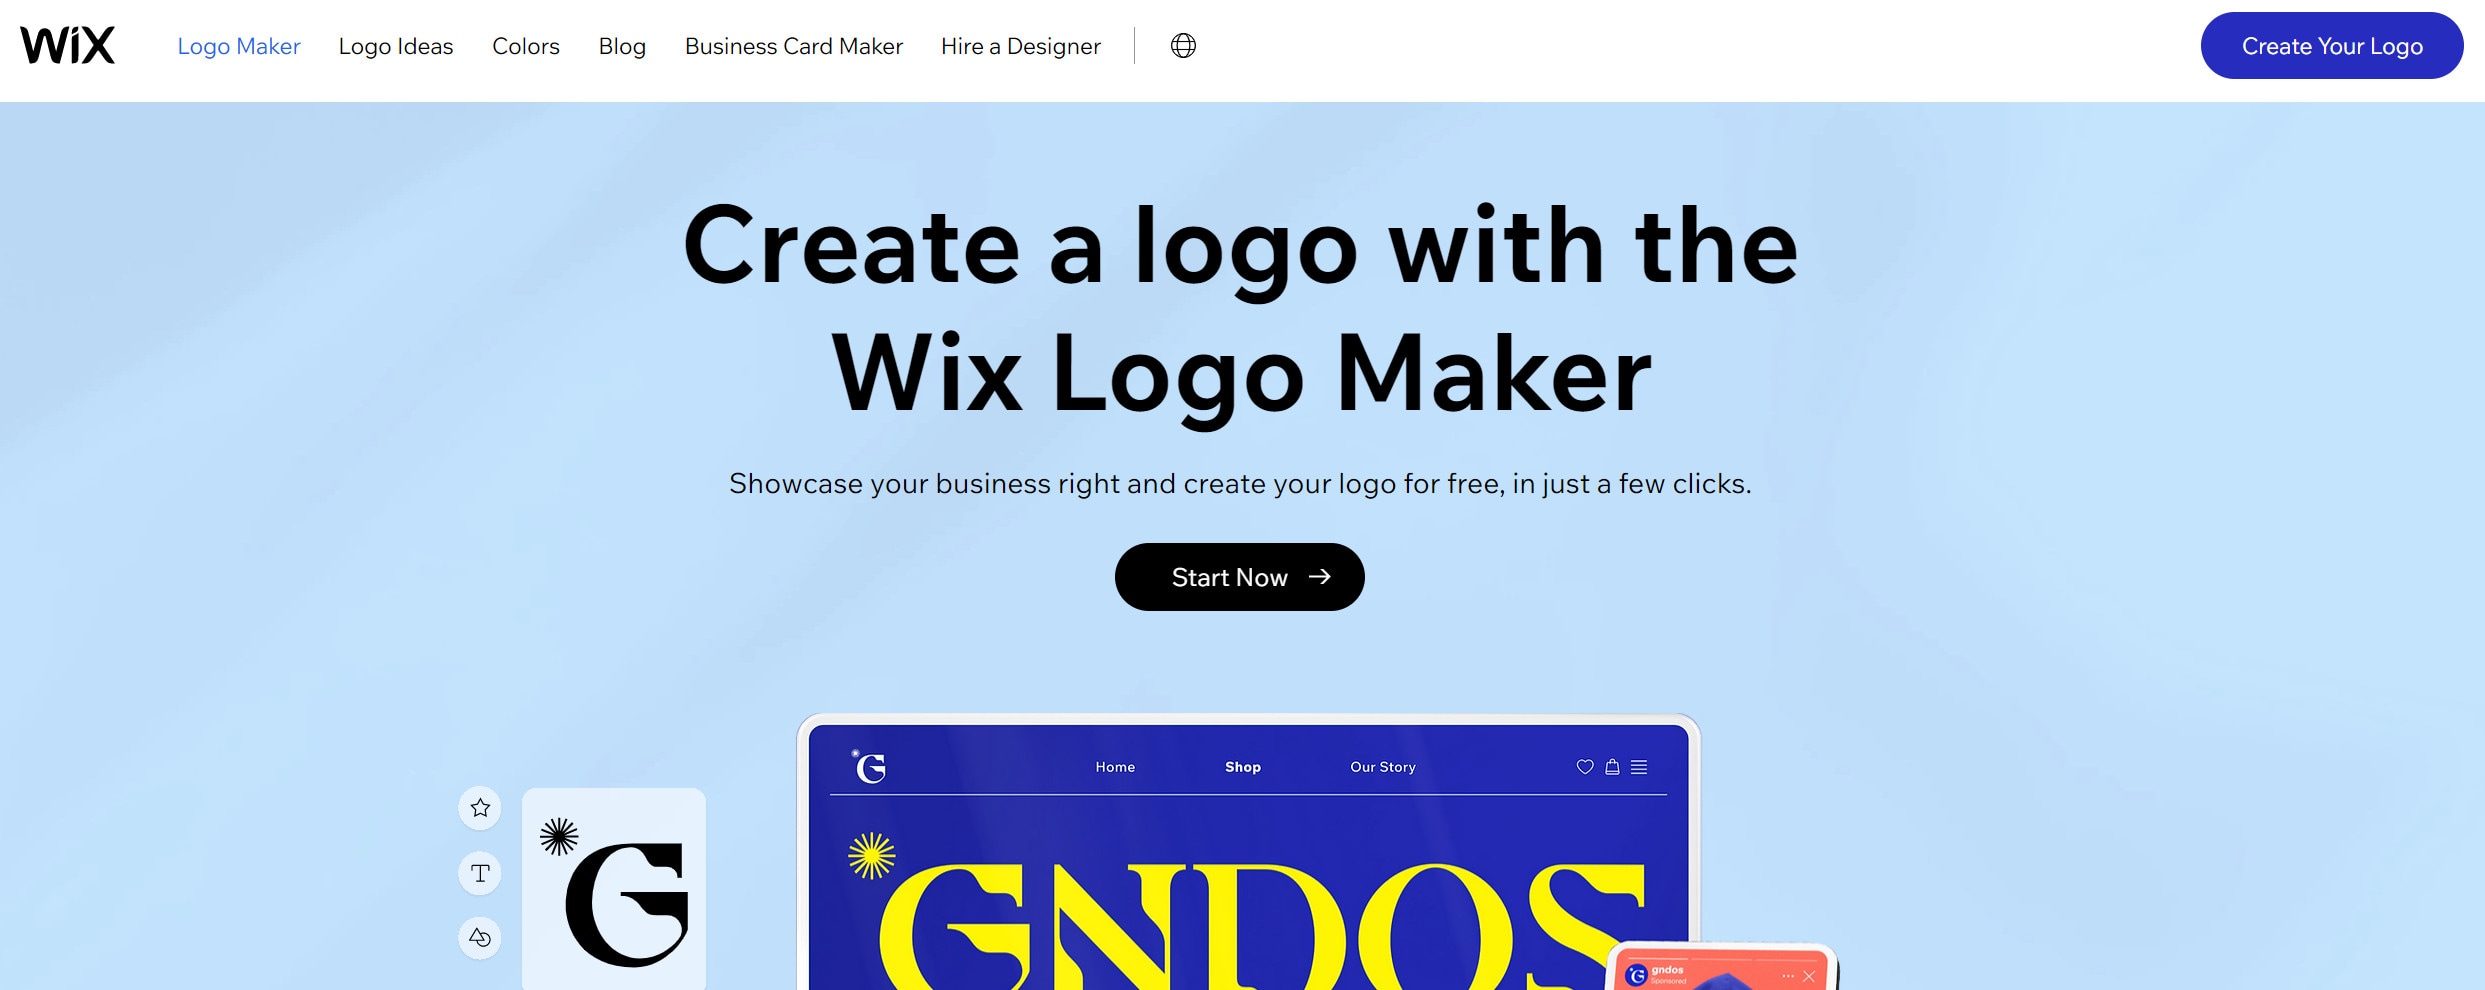 wix logo seite